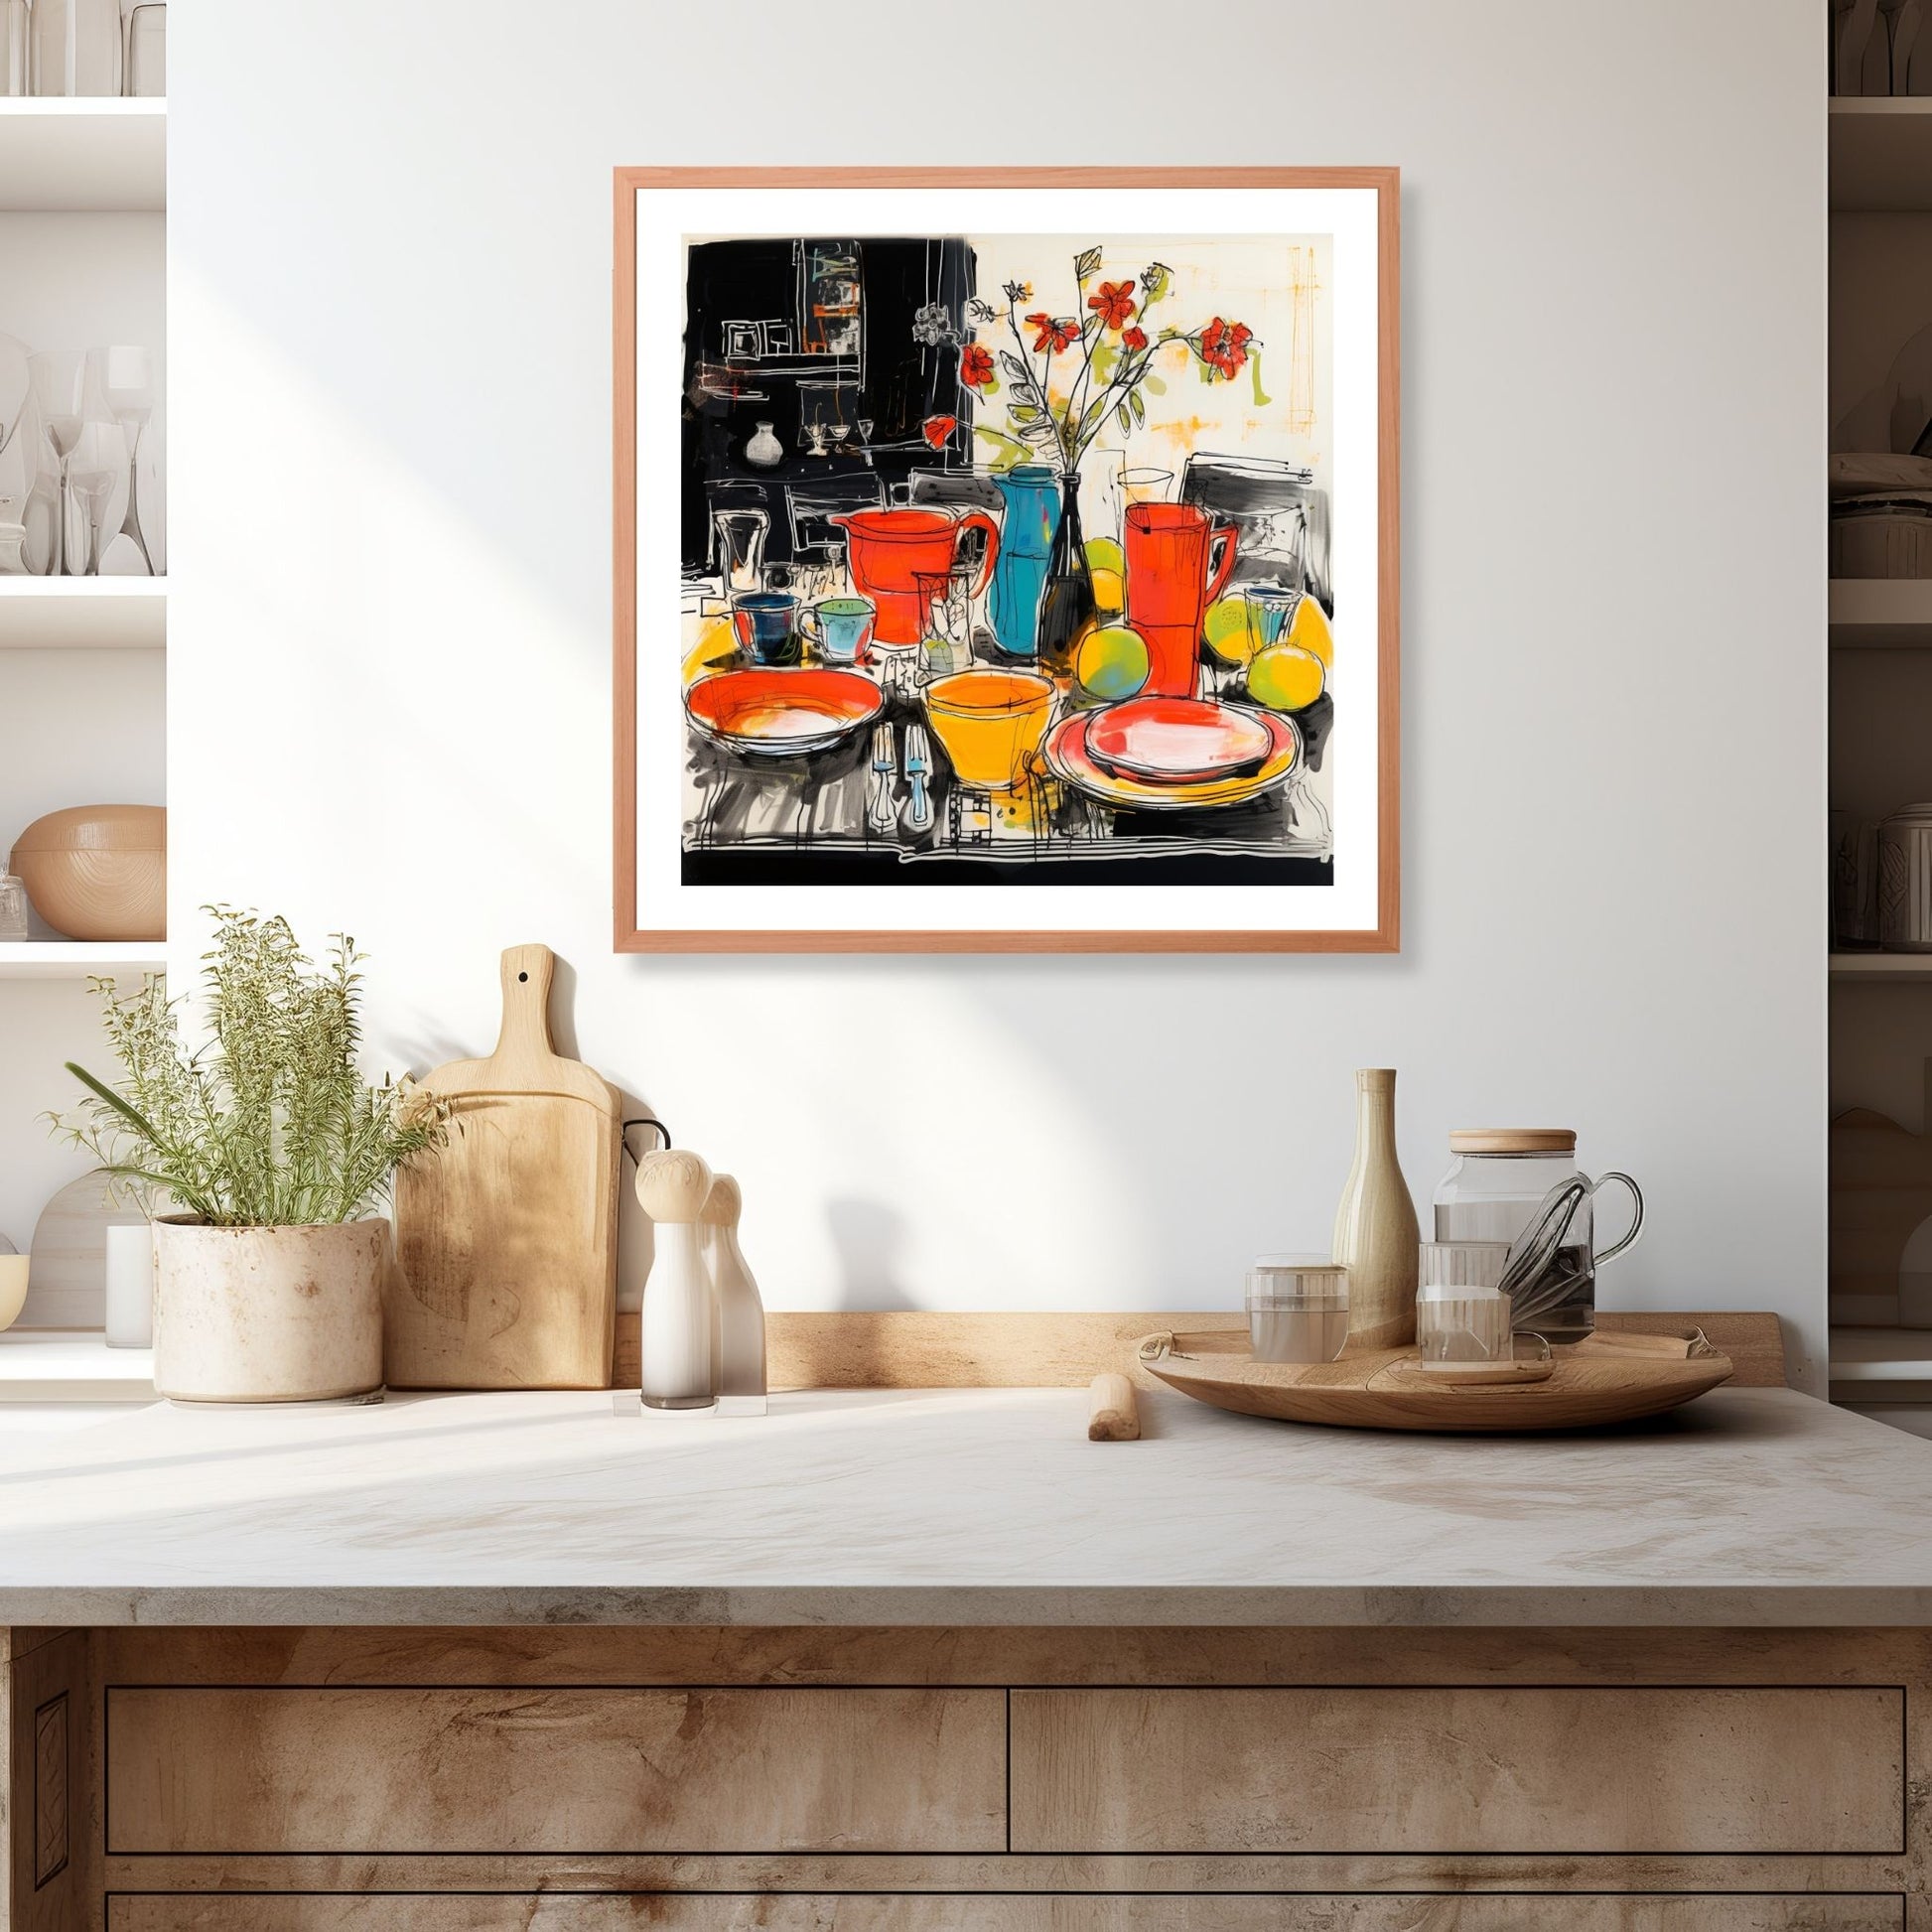 Drawn Kitchen Art plakat og lerret viser et herlig borddekor med kopper, skåler og tallerkener i en levende og fargerik stil. Illustrasjonen viser motivet som plakat i en ramme som henger over en kjøkkenbenk.